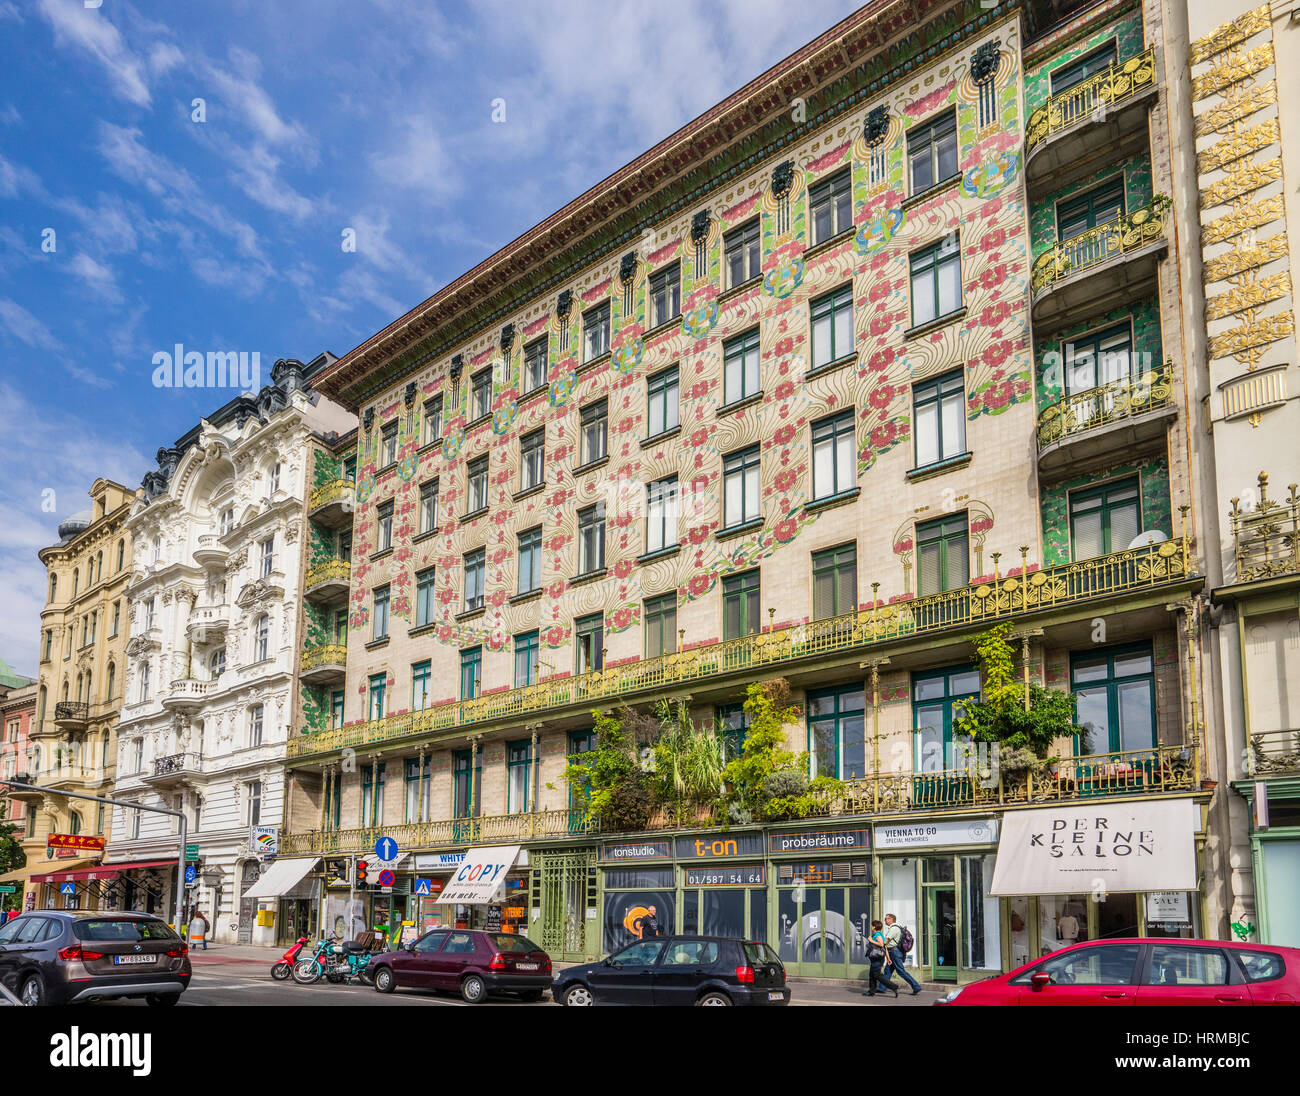 Österreich, Wien, Jugendstil Archtecture an der Wienzeile gegenüber Naschmarkt, Blick auf die Majolika House Wth seine floralen glasierten Fliesen-ornament Stockfoto